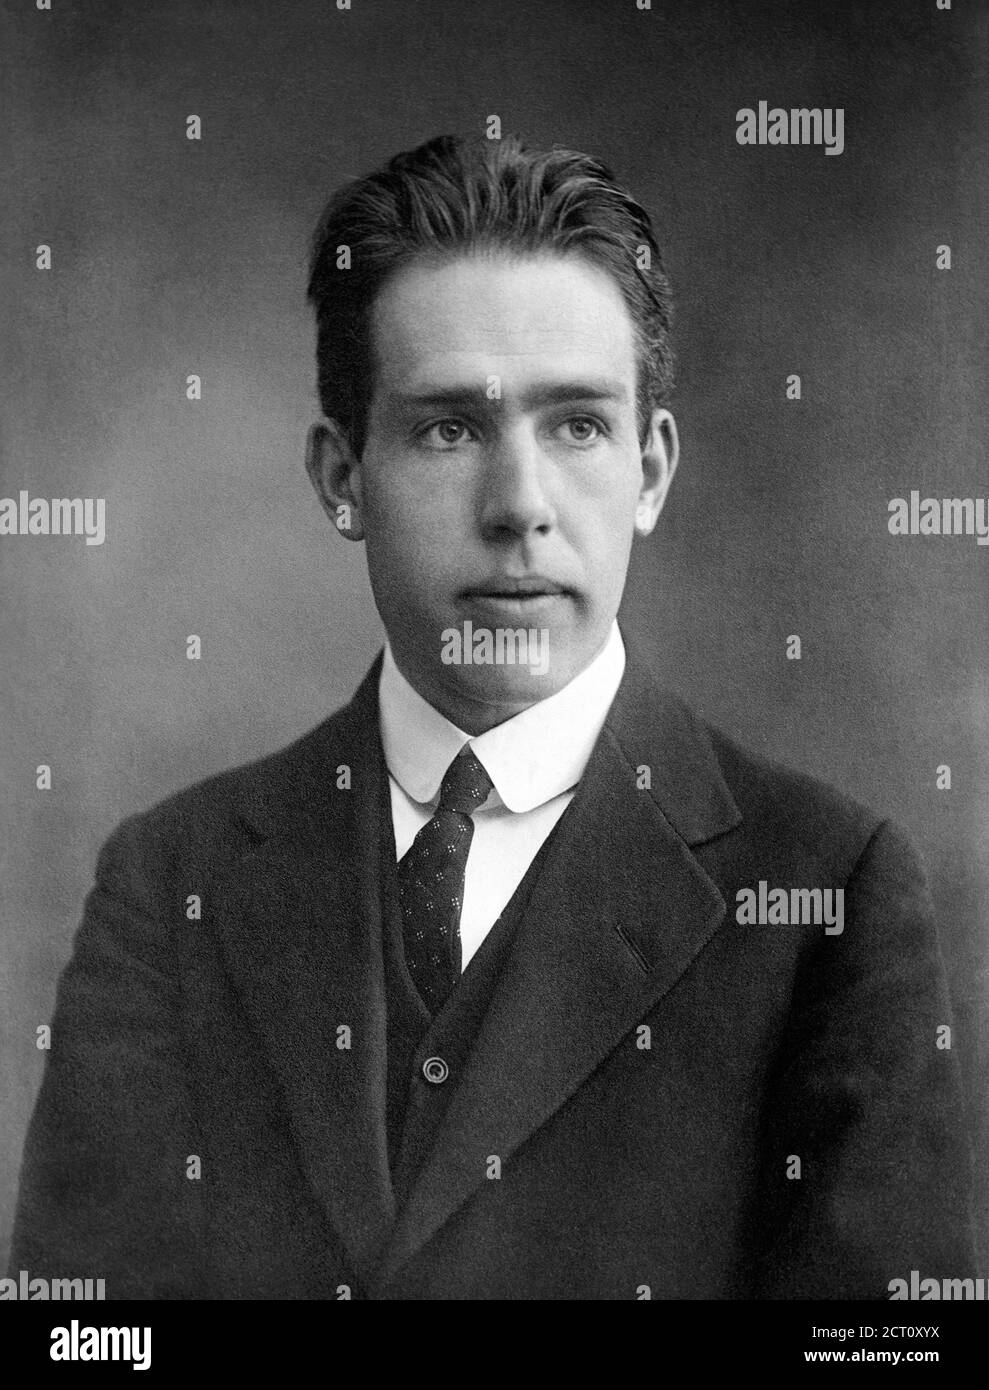 Niels Bohr. Retrato del físico teórico danés Niels Henrik David Bohr (1885-1962) como joven Foto de stock